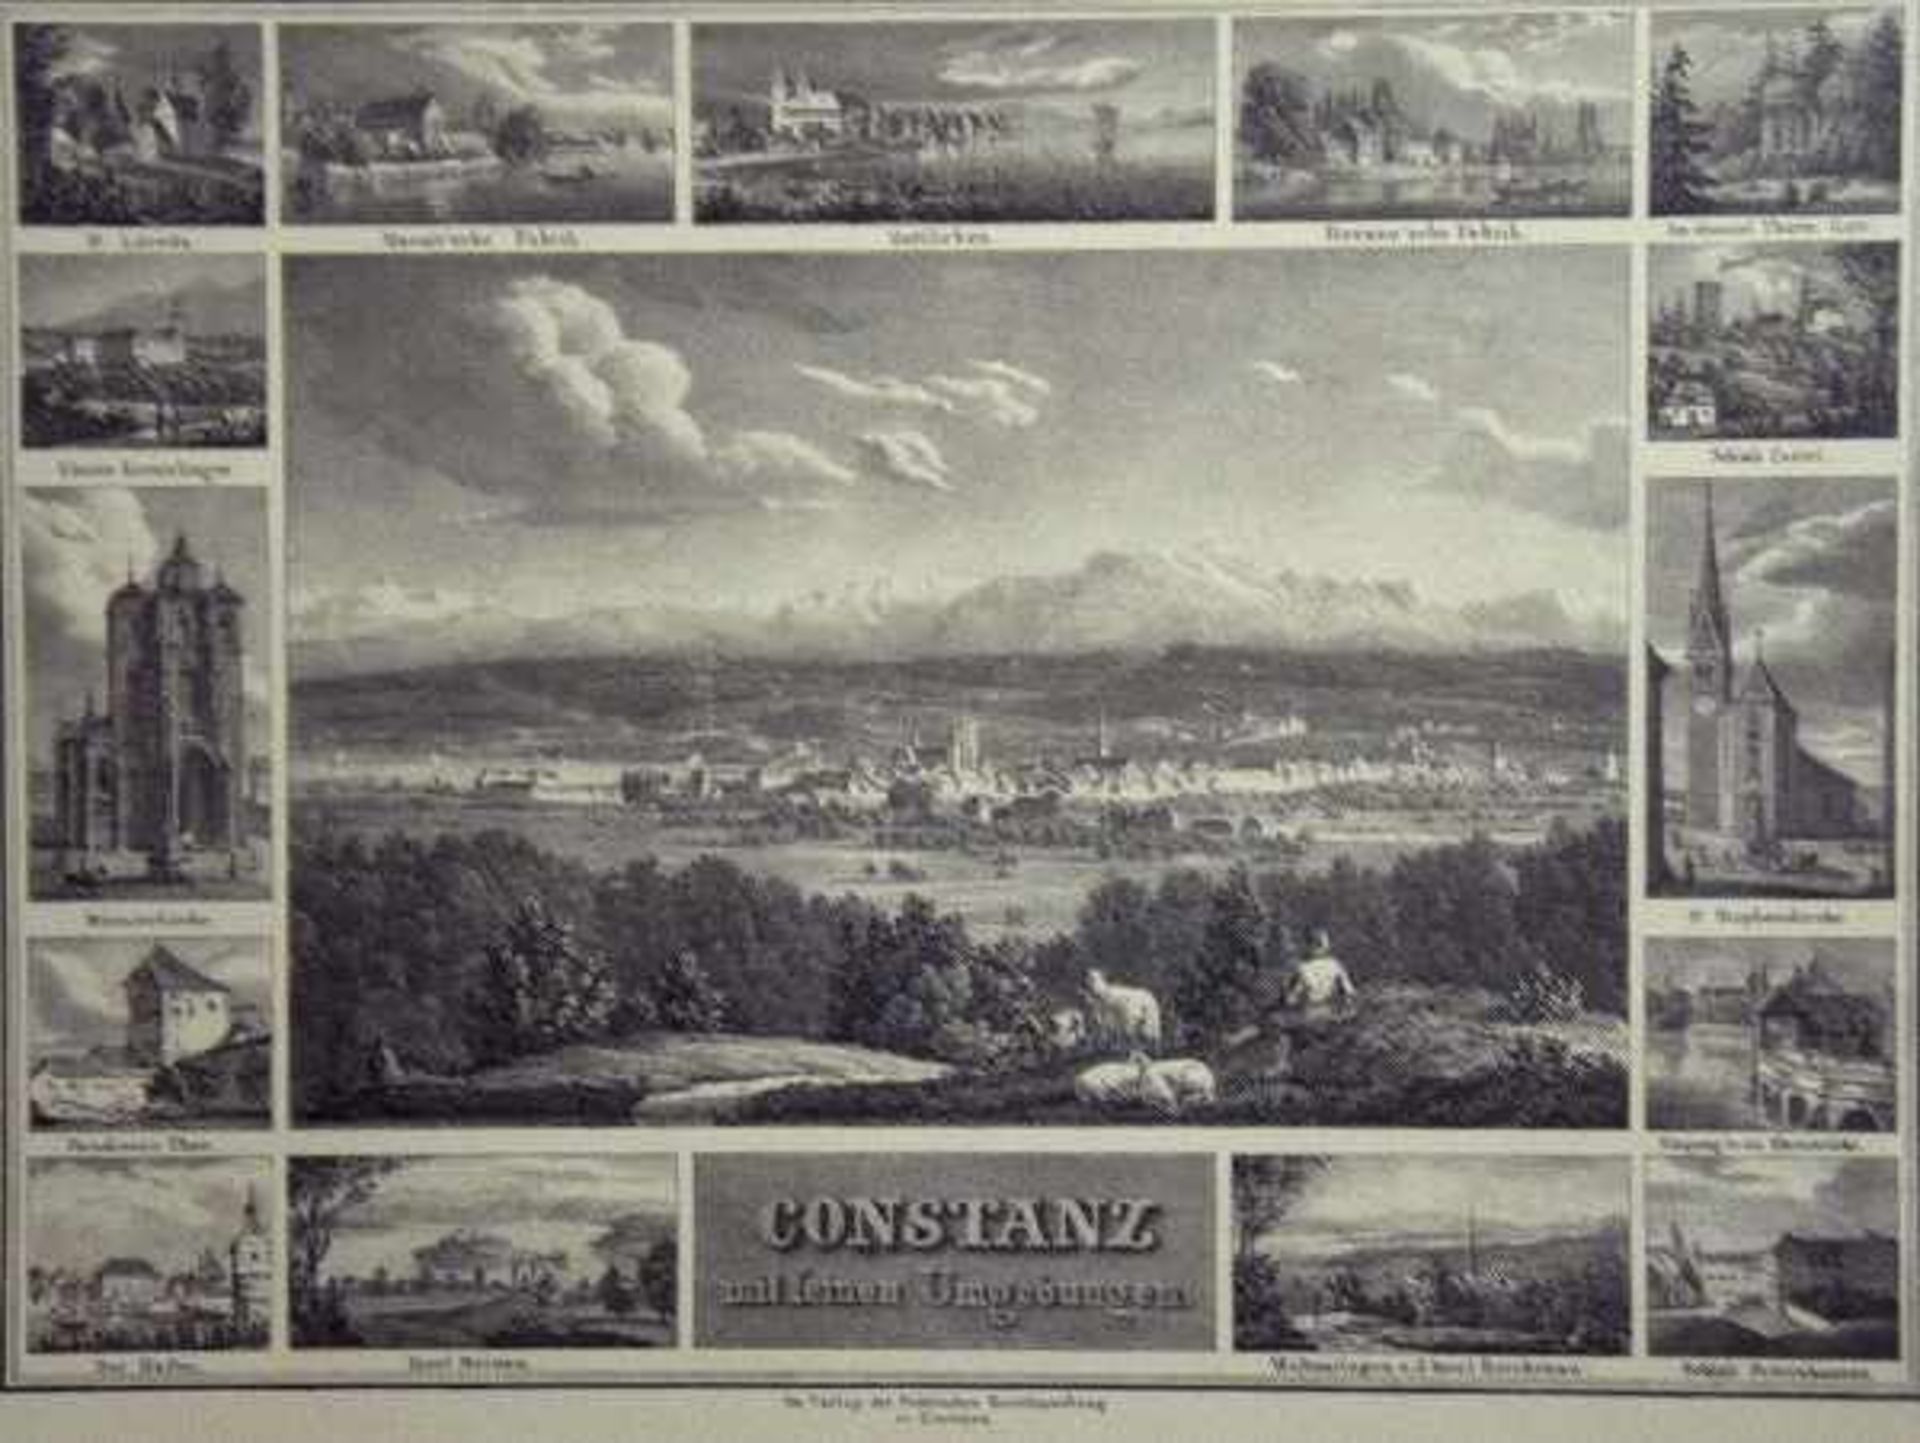 ANSICHT "Konstanz", mit seinen Umgebungen, Souvenirblatt mit großer Ansicht von Konstanz und 15 - Bild 2 aus 3